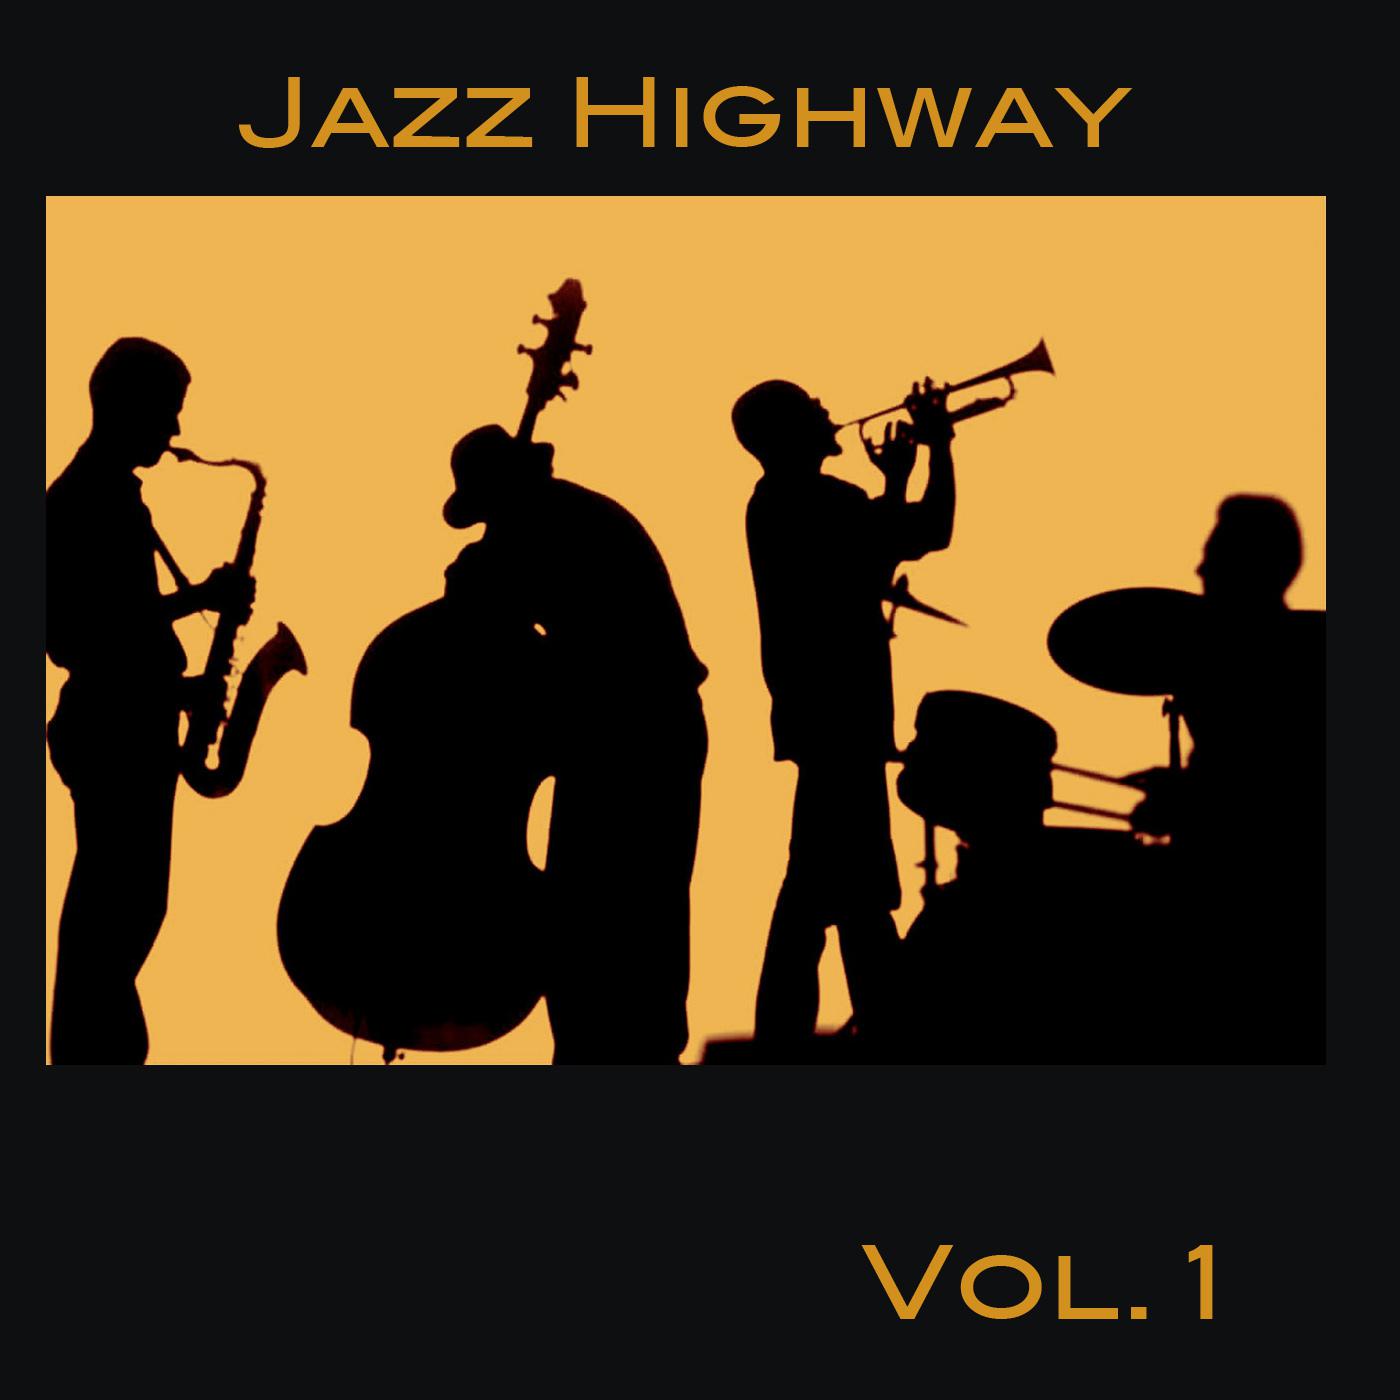 Jazz Highway Vol. 1